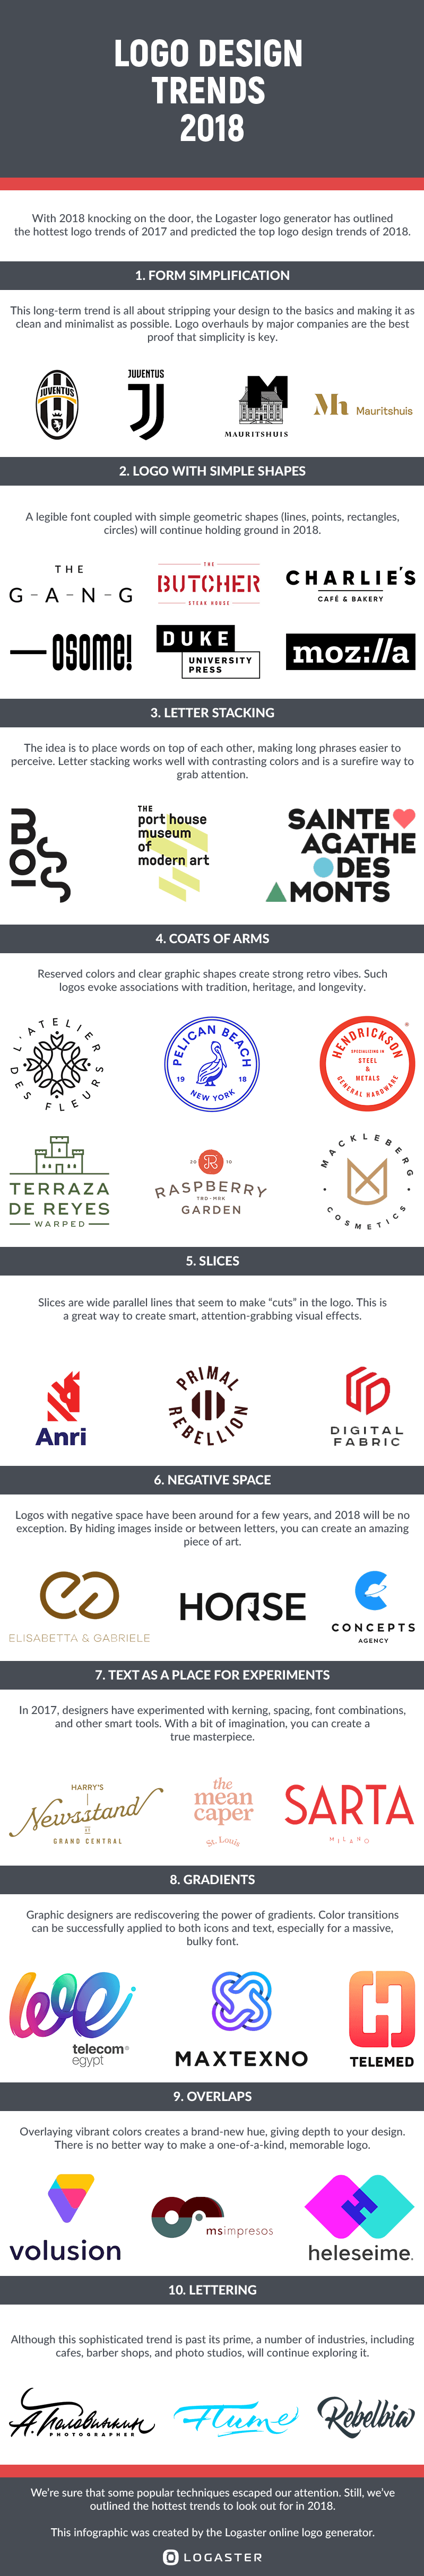 3 Letter Brand Logo - Top 10 Logo Design Trends 2018 | Logo Design Blog | Logaster